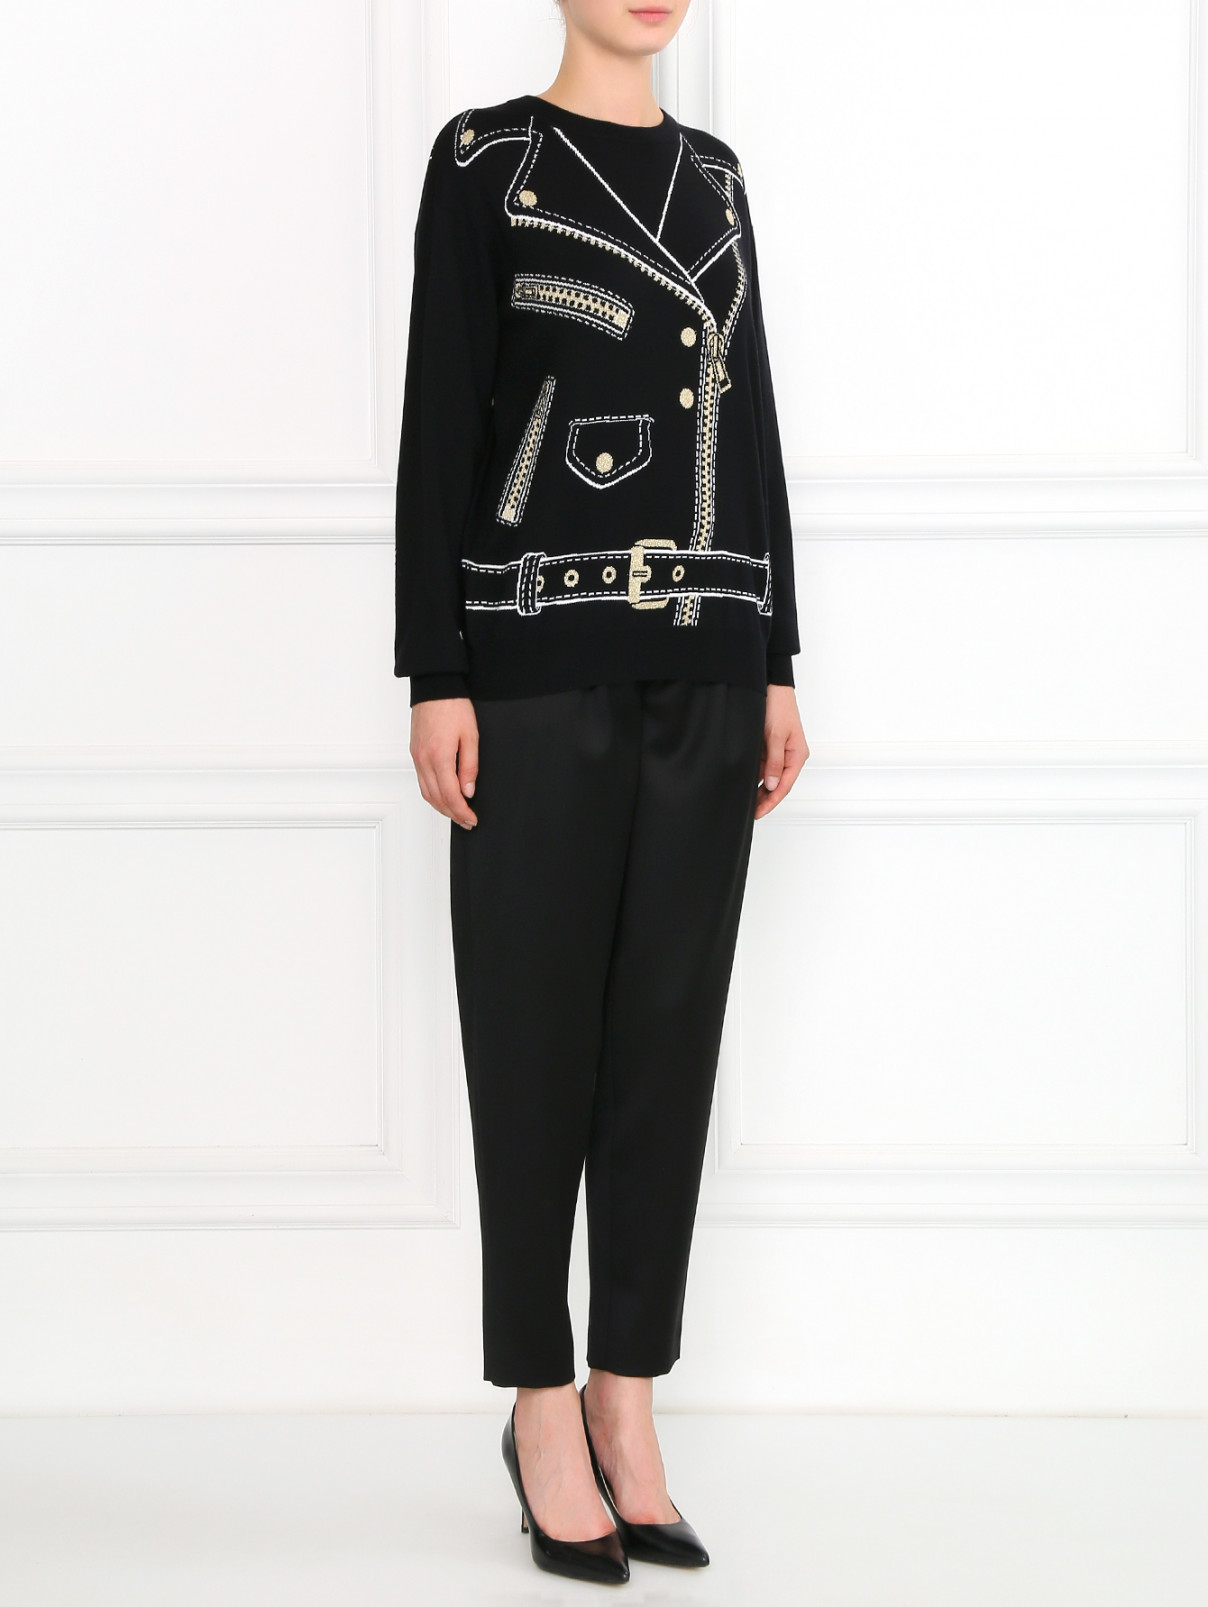 Широкие брюки из шерсти Moschino Boutique  –  Модель Общий вид  – Цвет:  Черный